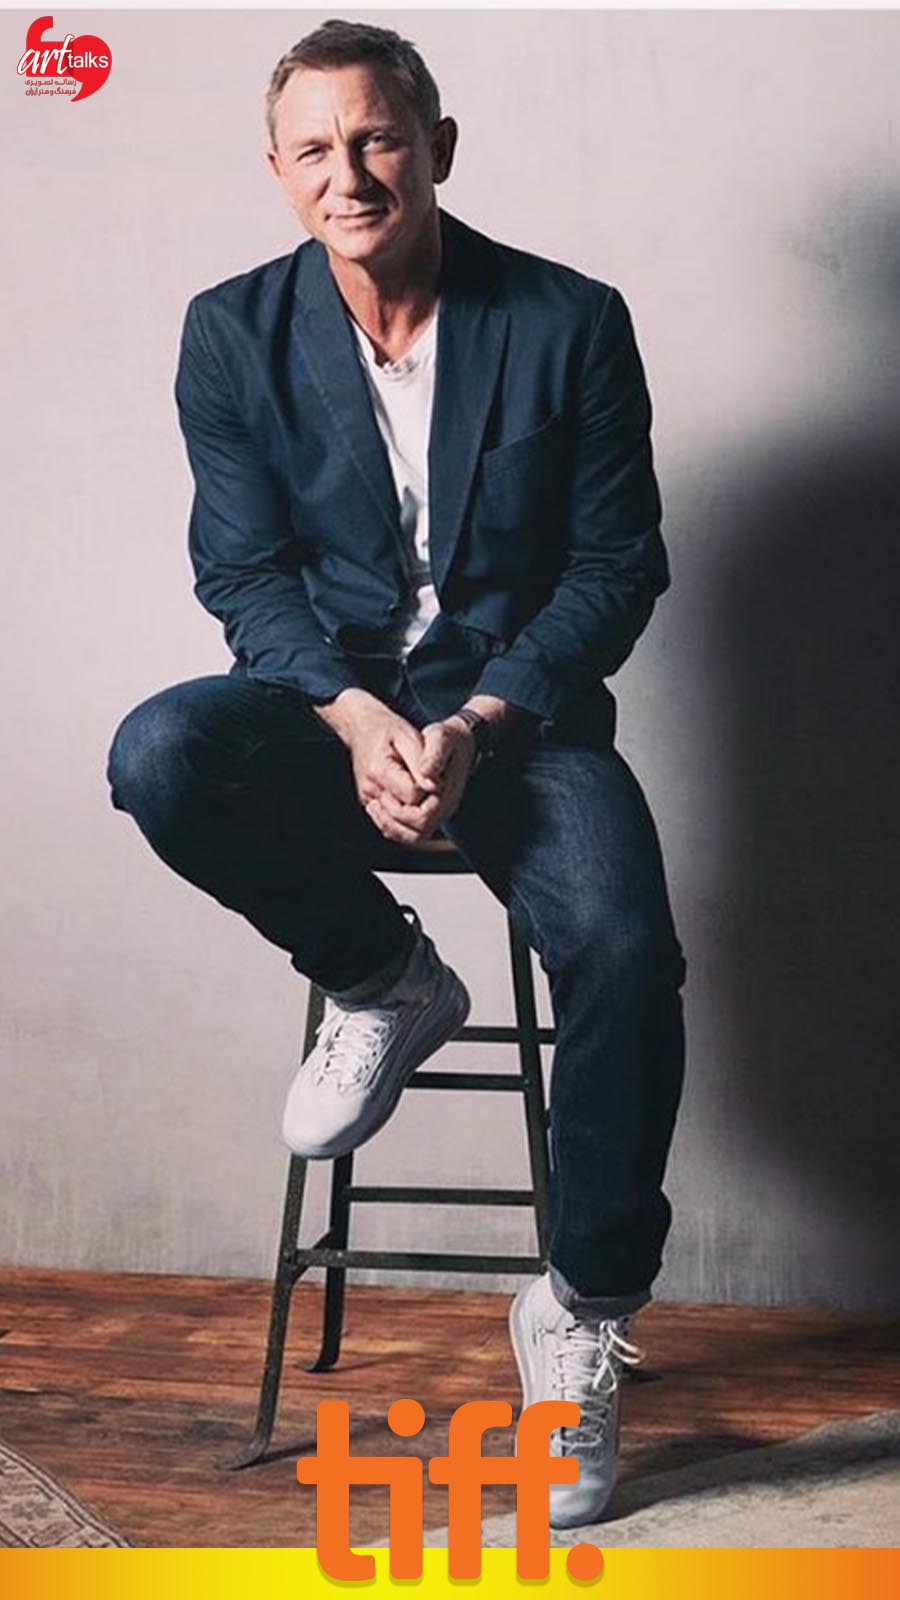 دنیل کریج در جشنواره فیلم تورنتو